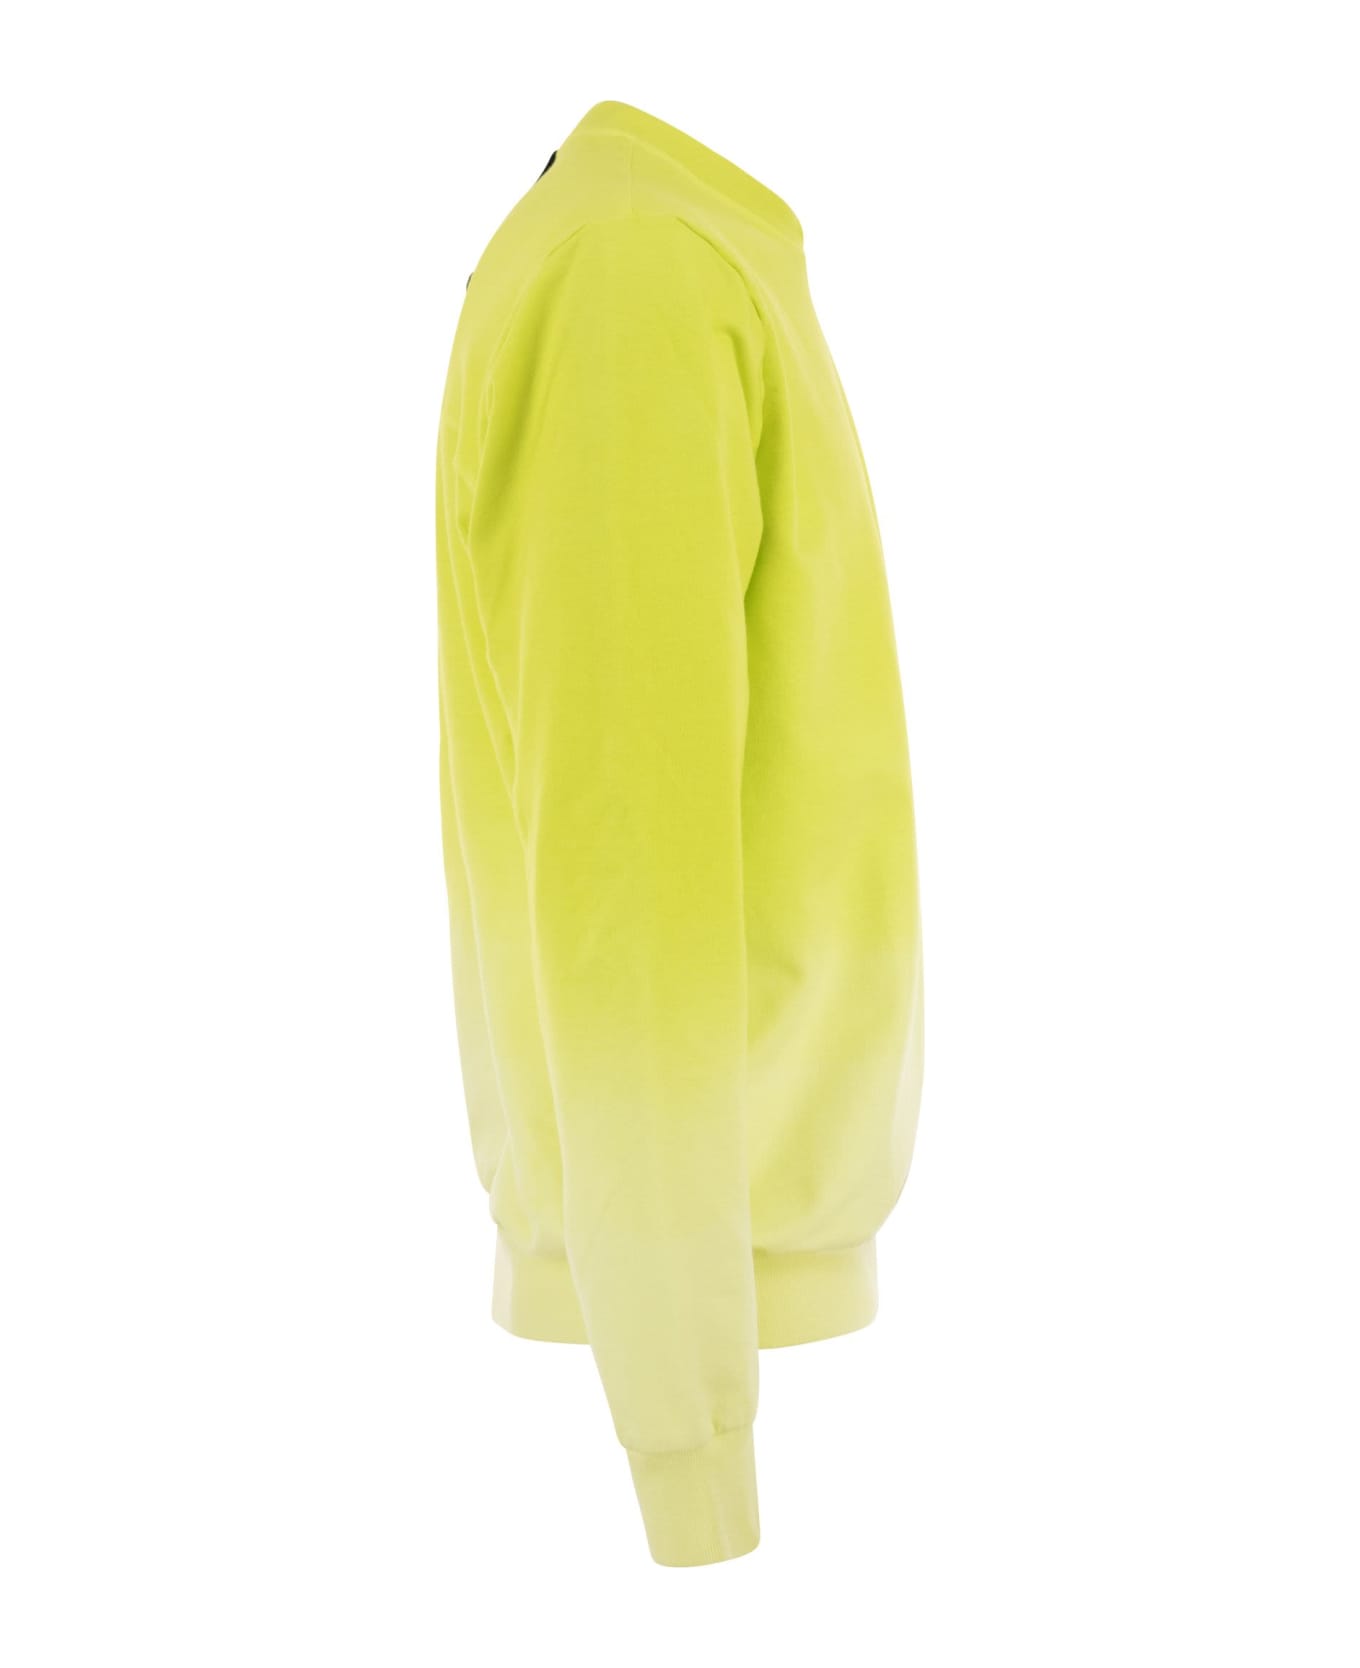 Premiata Crew-neck Sweatshirt With Logo - Fluo Yellow ニットウェア